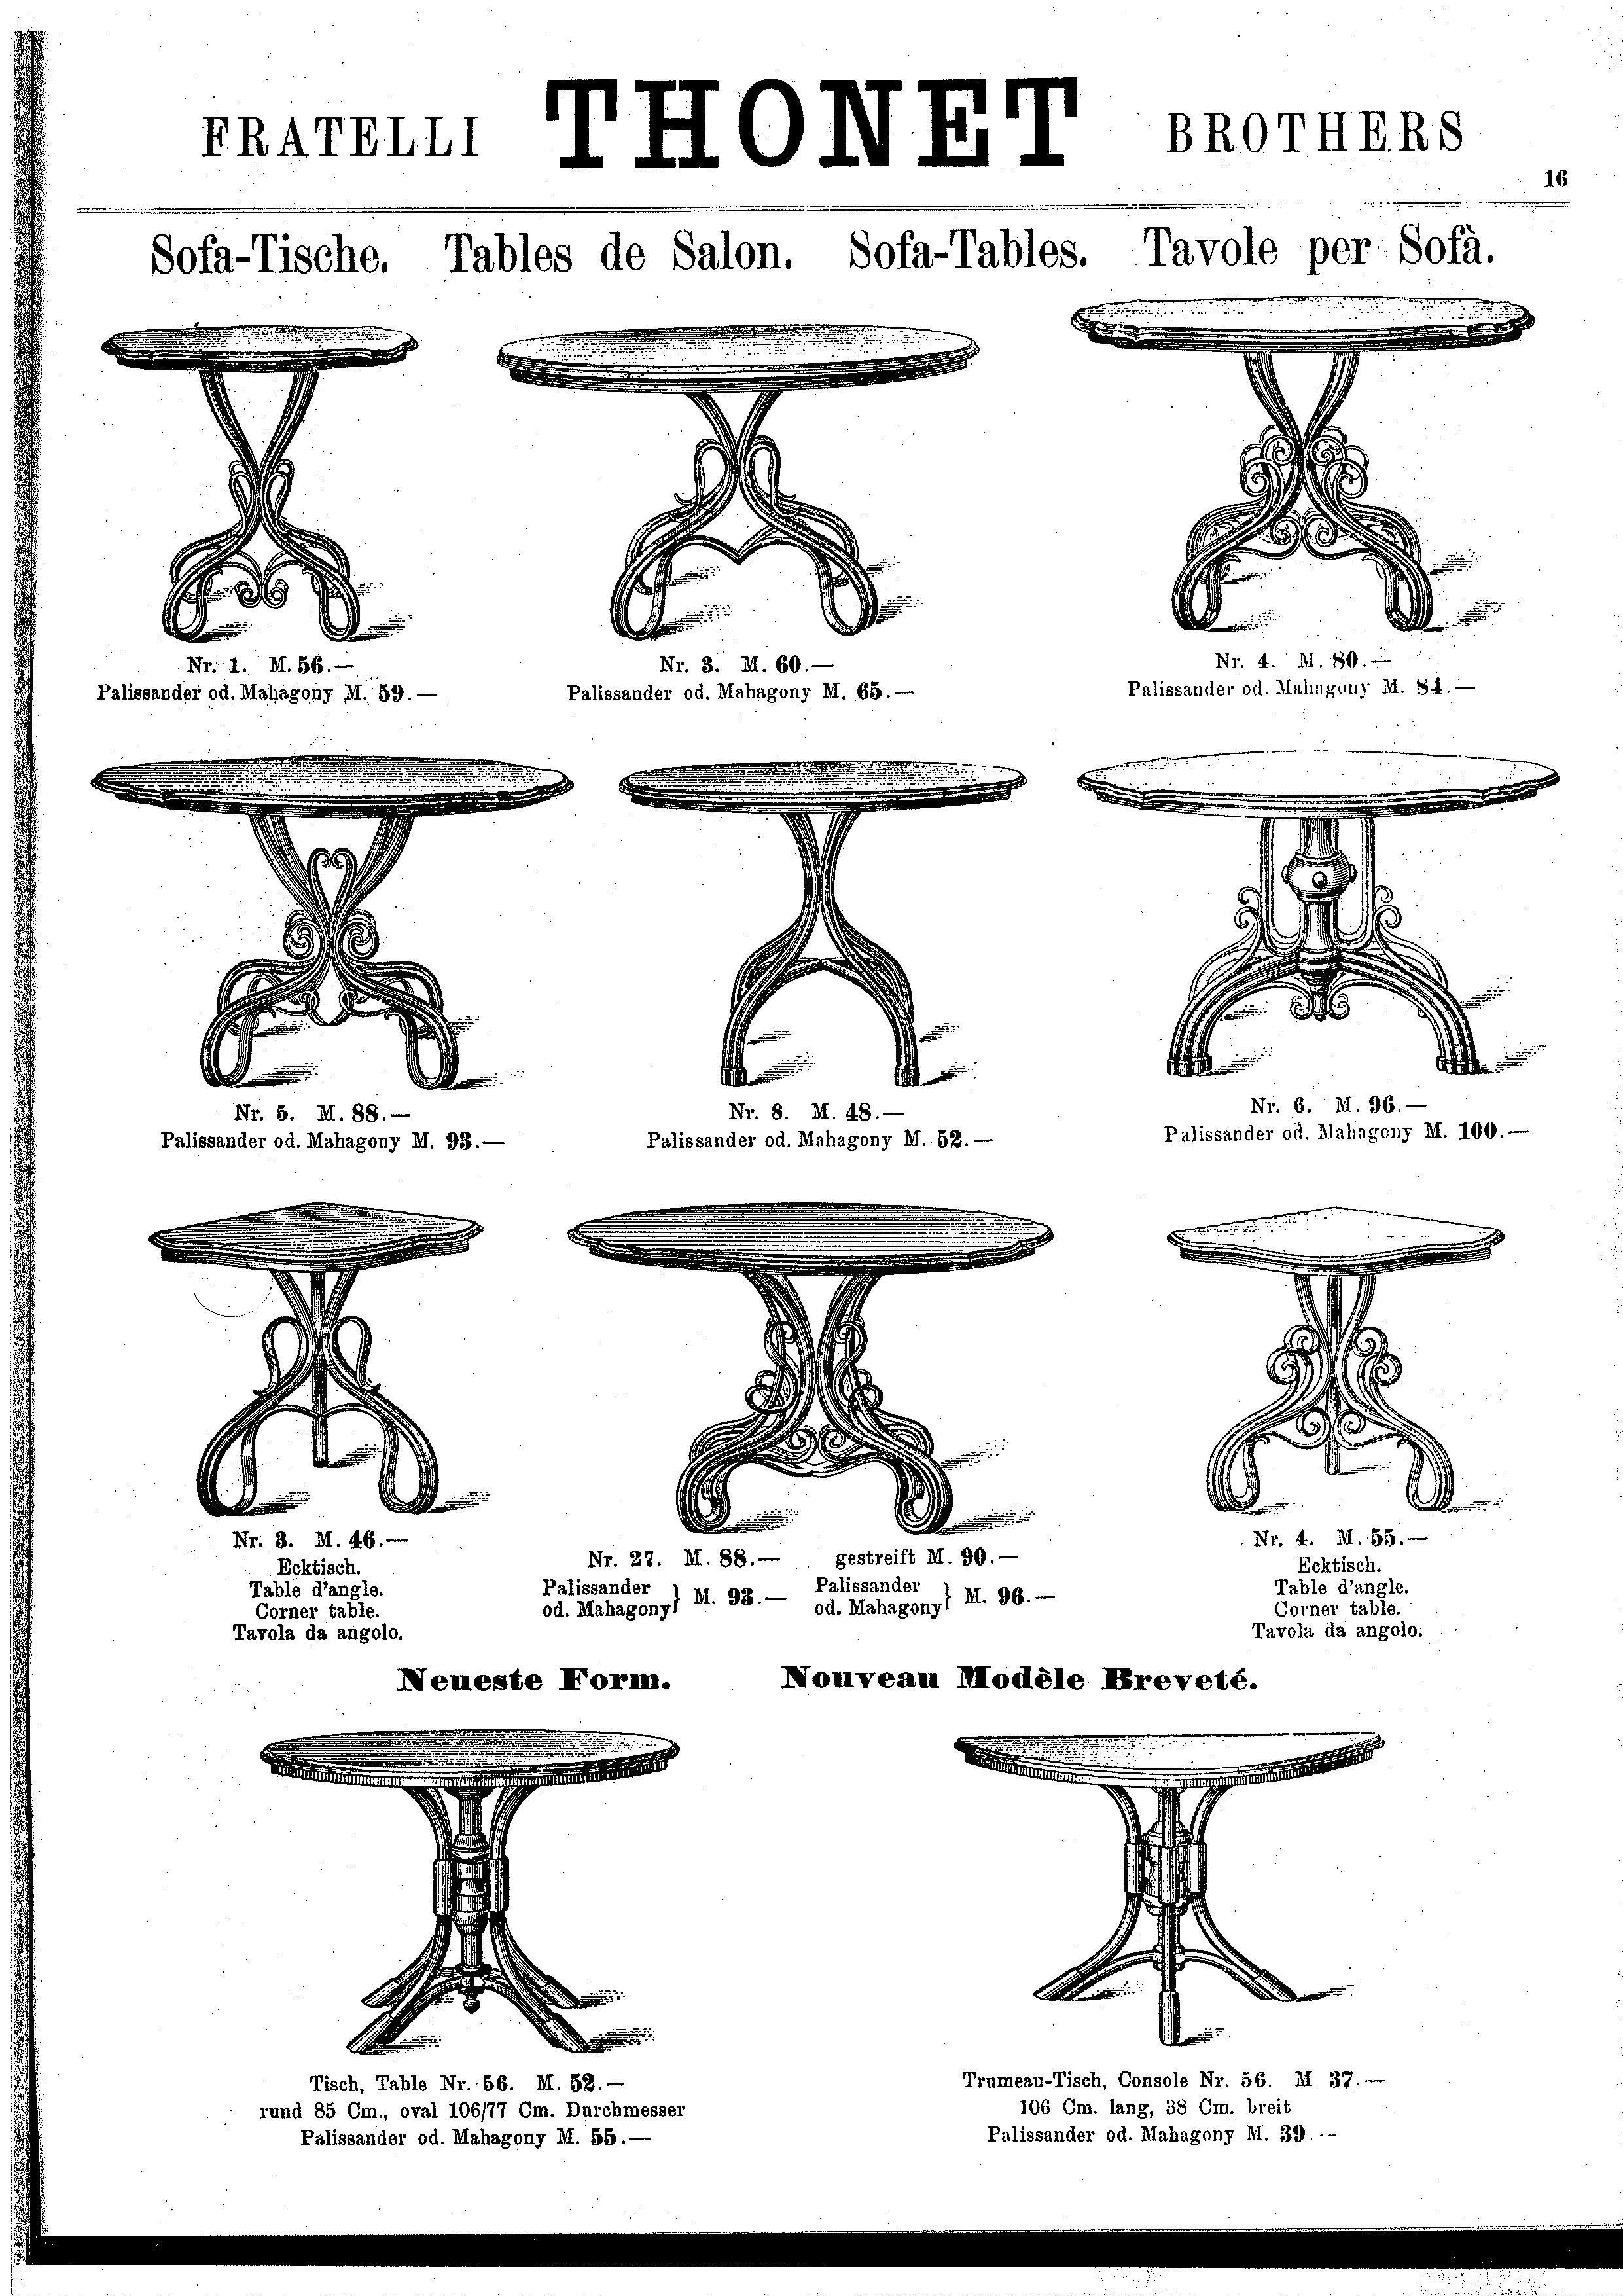 Table Thonet Nr.56, circa 1885 3